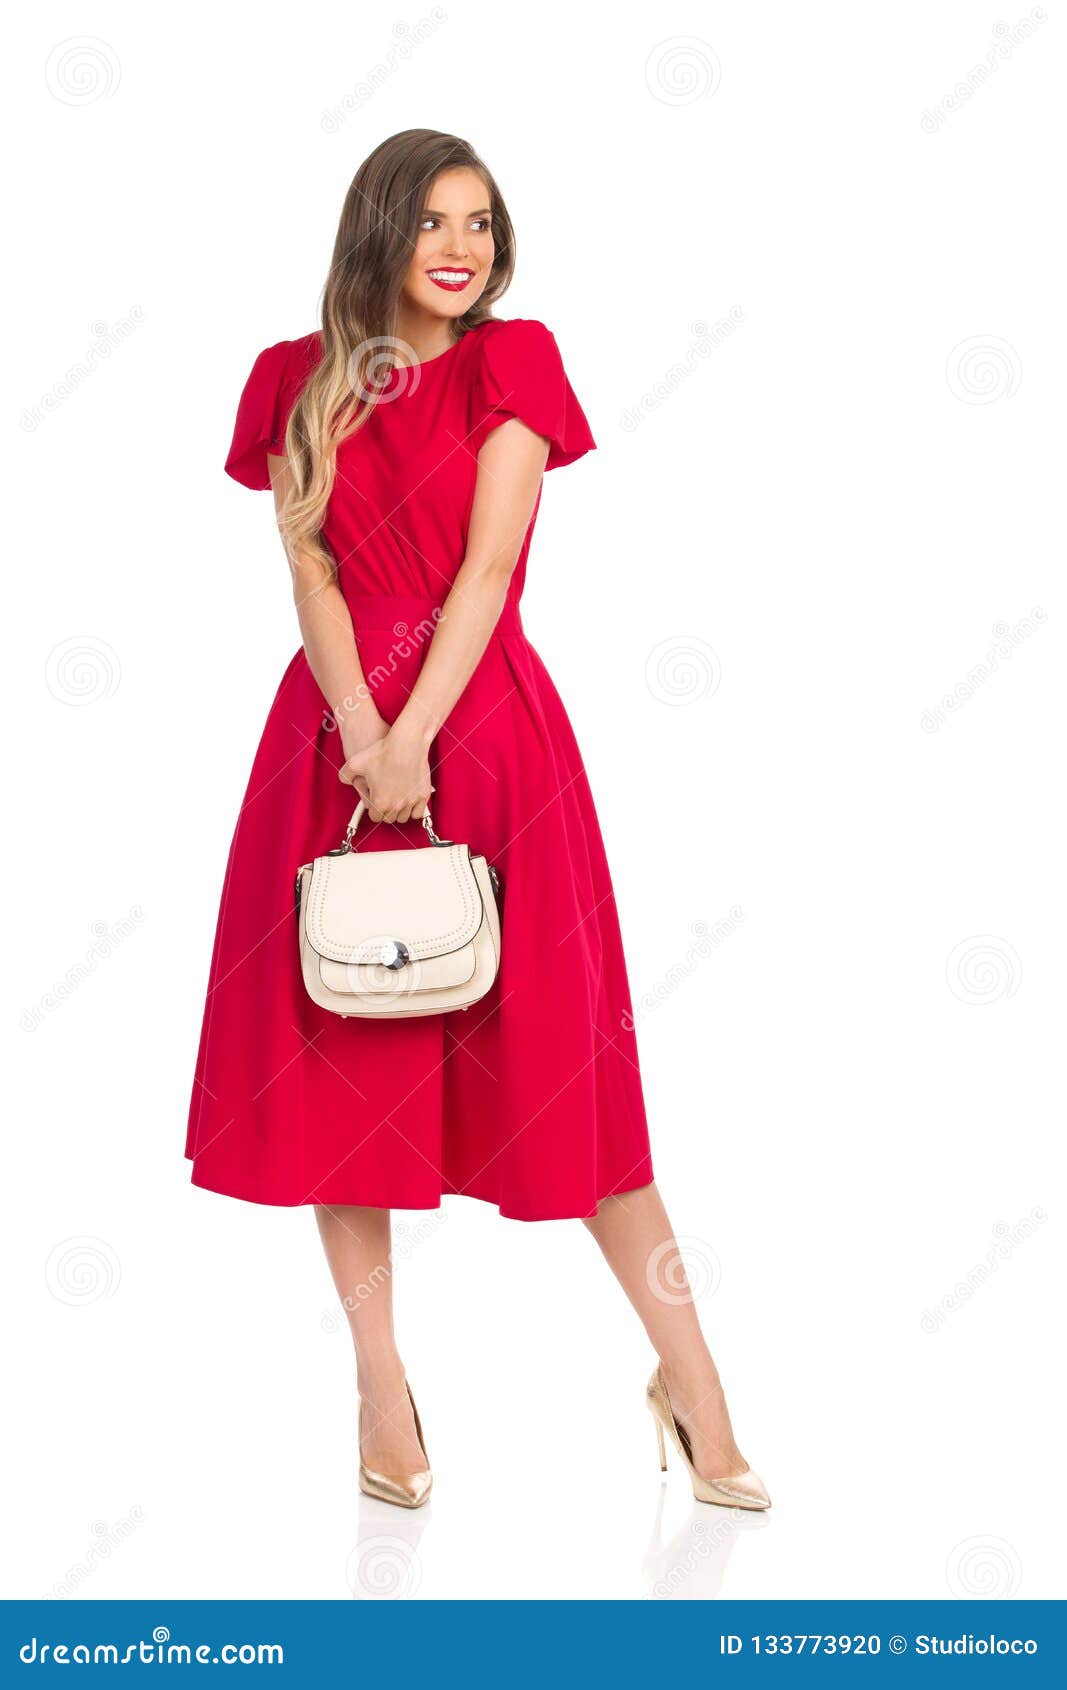 La Mujer De Moda Tímida En Vestido Rojo, Tacones Altos Del Oro Y Monedero Beige Está Mirando Lejos Y Sonrisa Foto de archivo - Imagen de rojo, 133773920